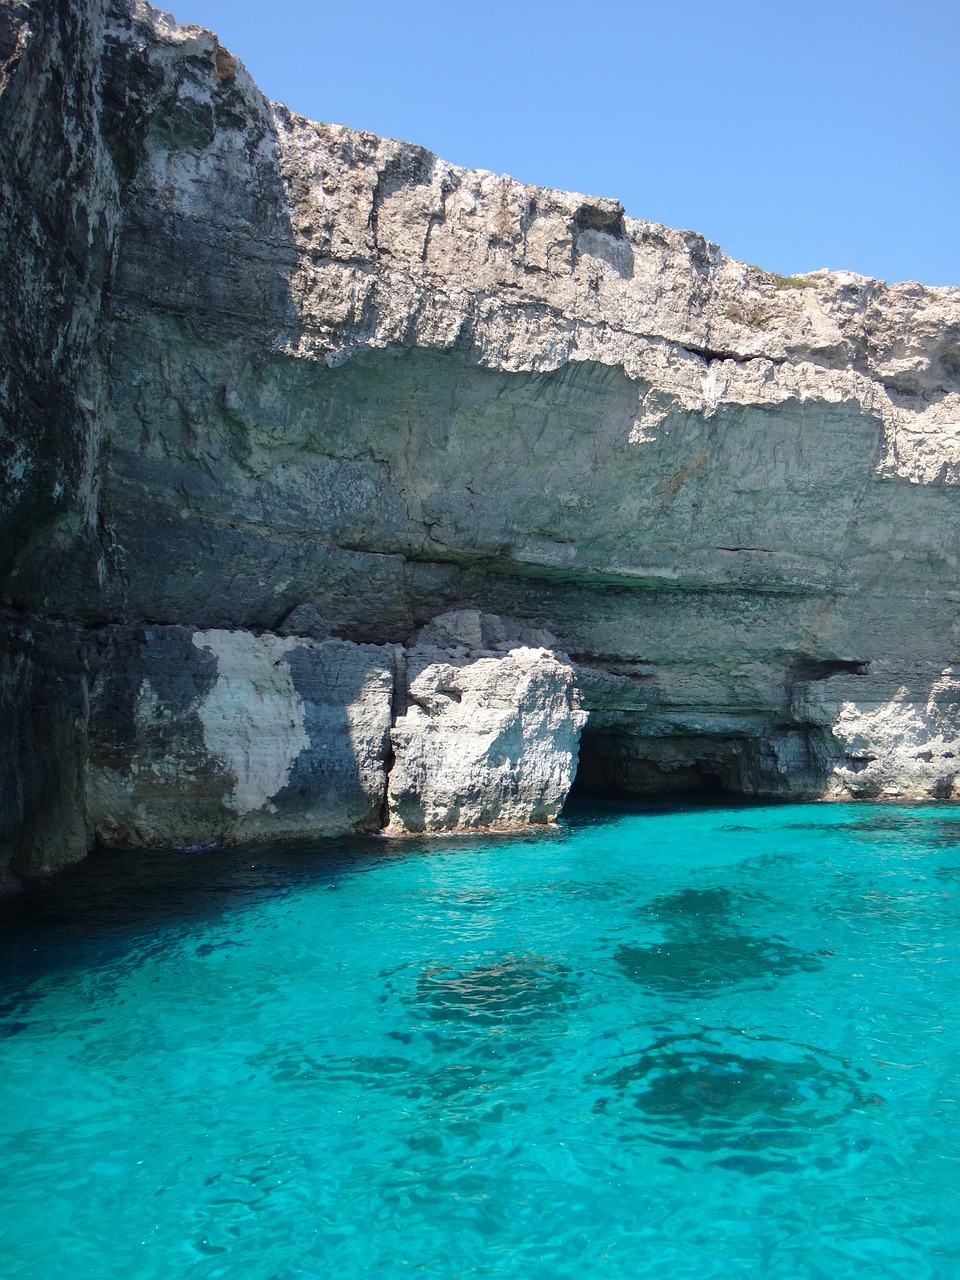 Blue Lagoon in Malta: A complete guide, Malta